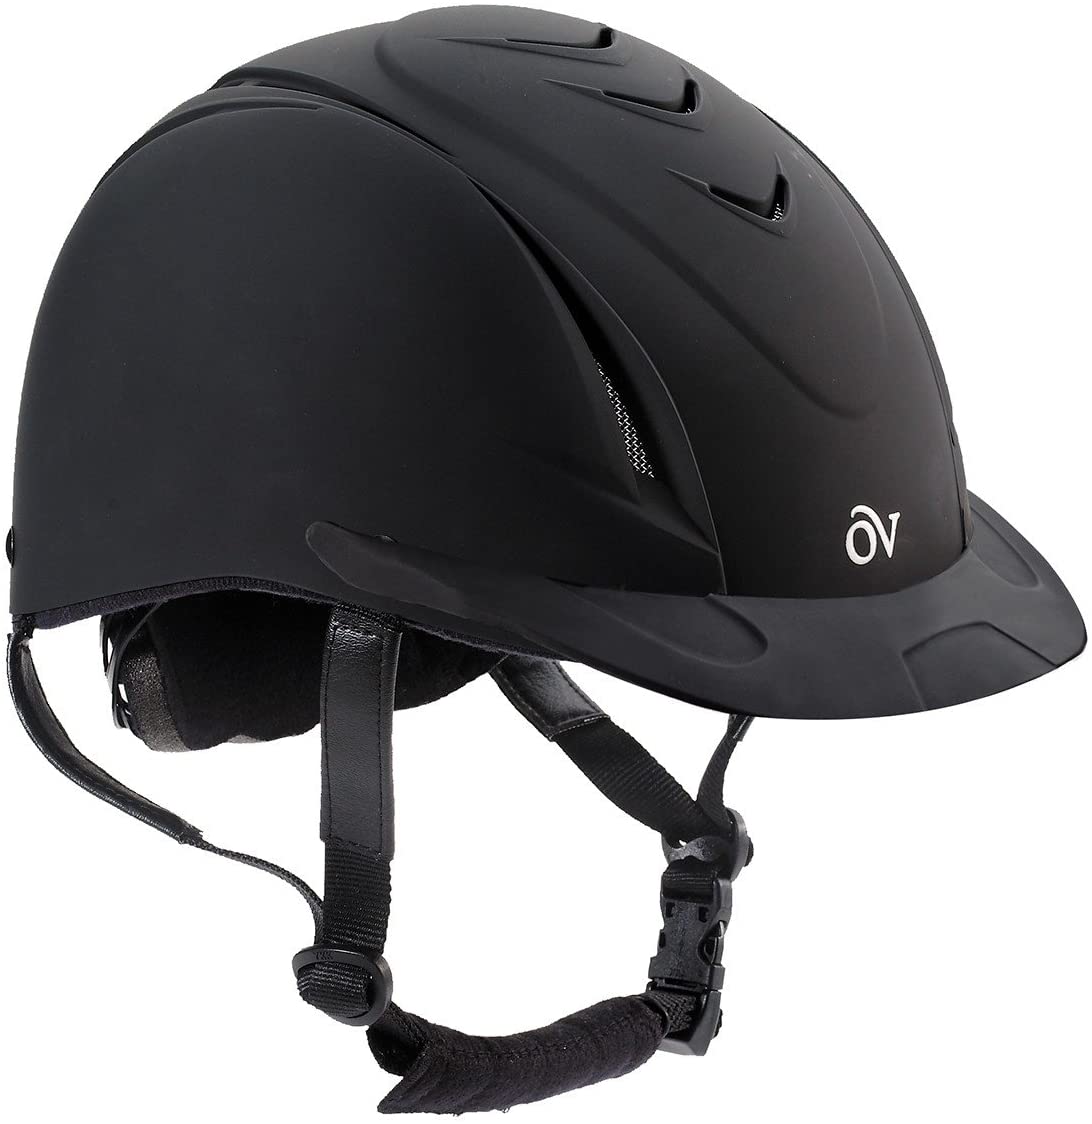 Ovation Girls' Schooler Deluxe Riding Helmet